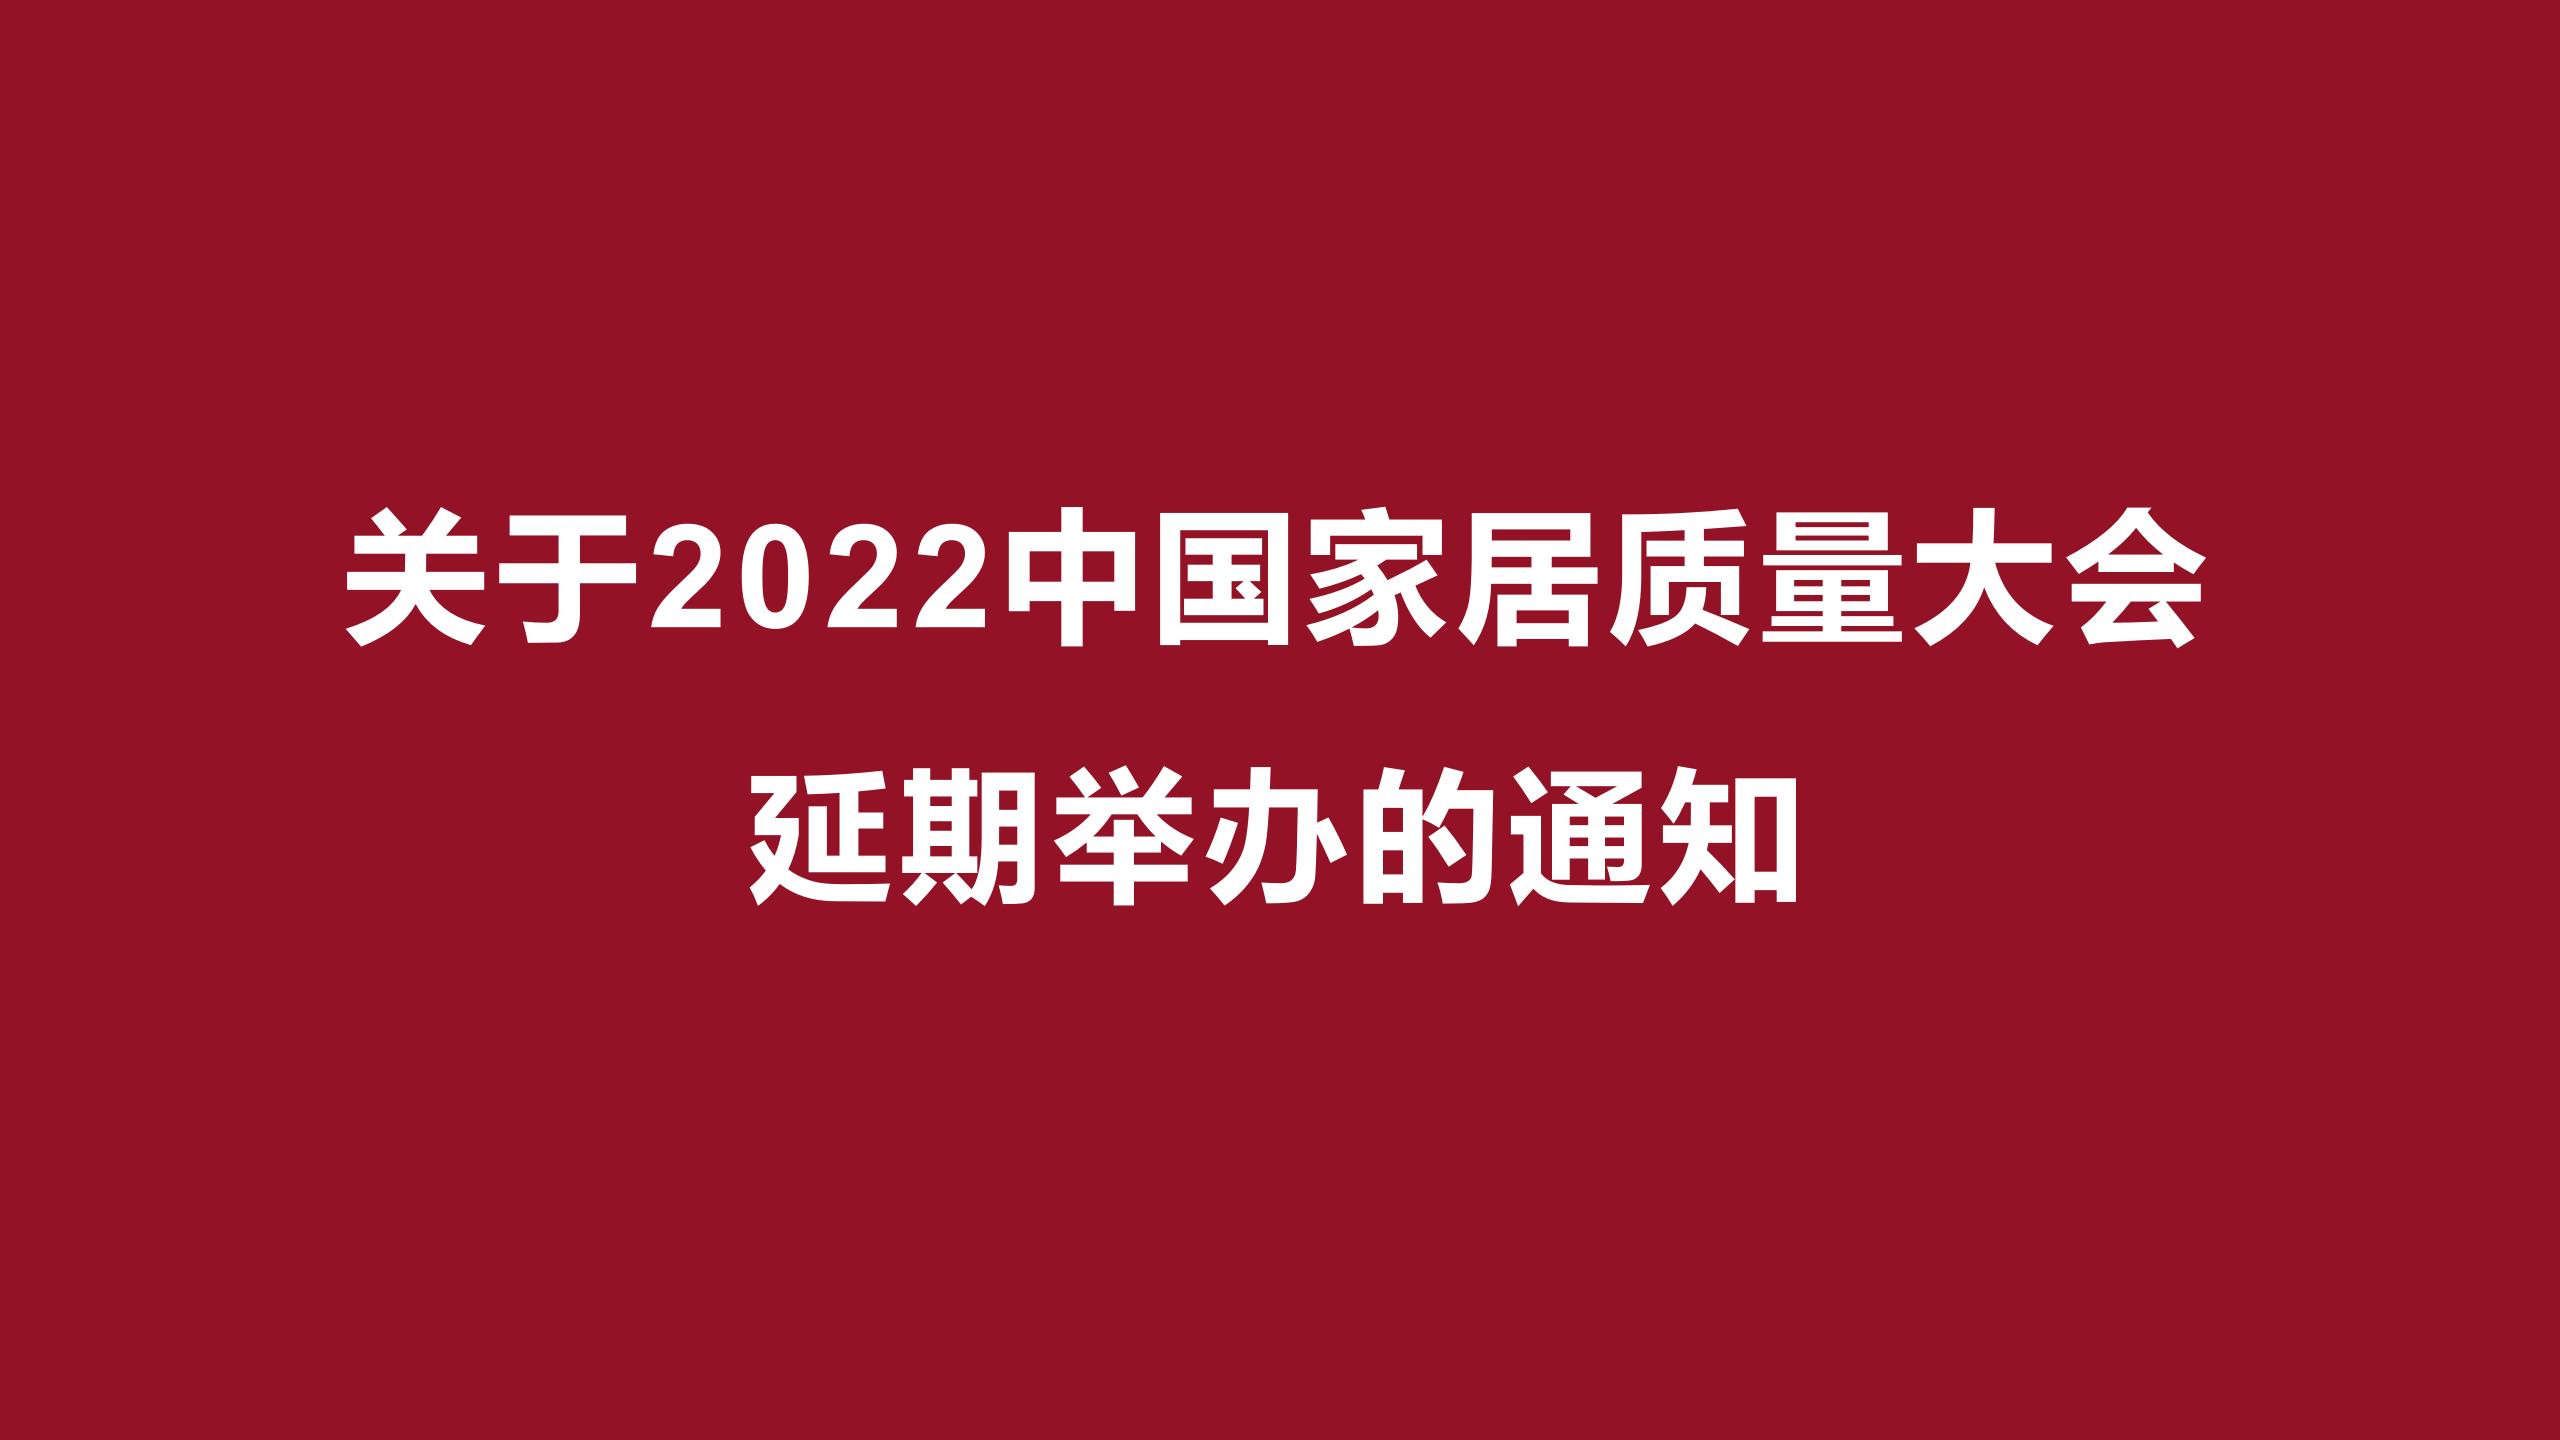 關于2022中國家居質量大會延期舉辦的通知